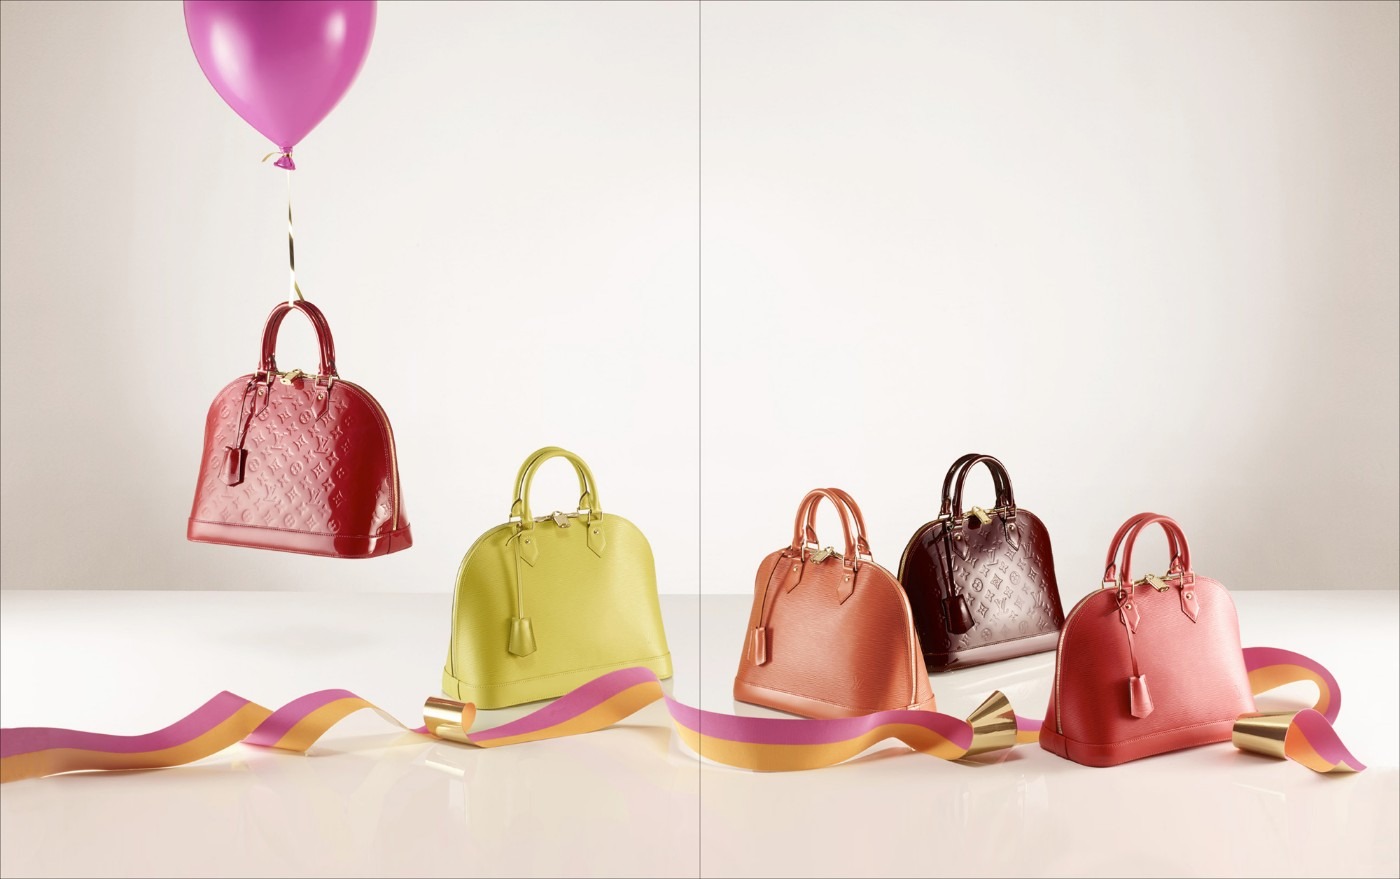 Интернет магазин сумок со скидкой. Louis Vuitton аксессуары. Реклама сумок. Реклама магазина сумок. Сумка женская.